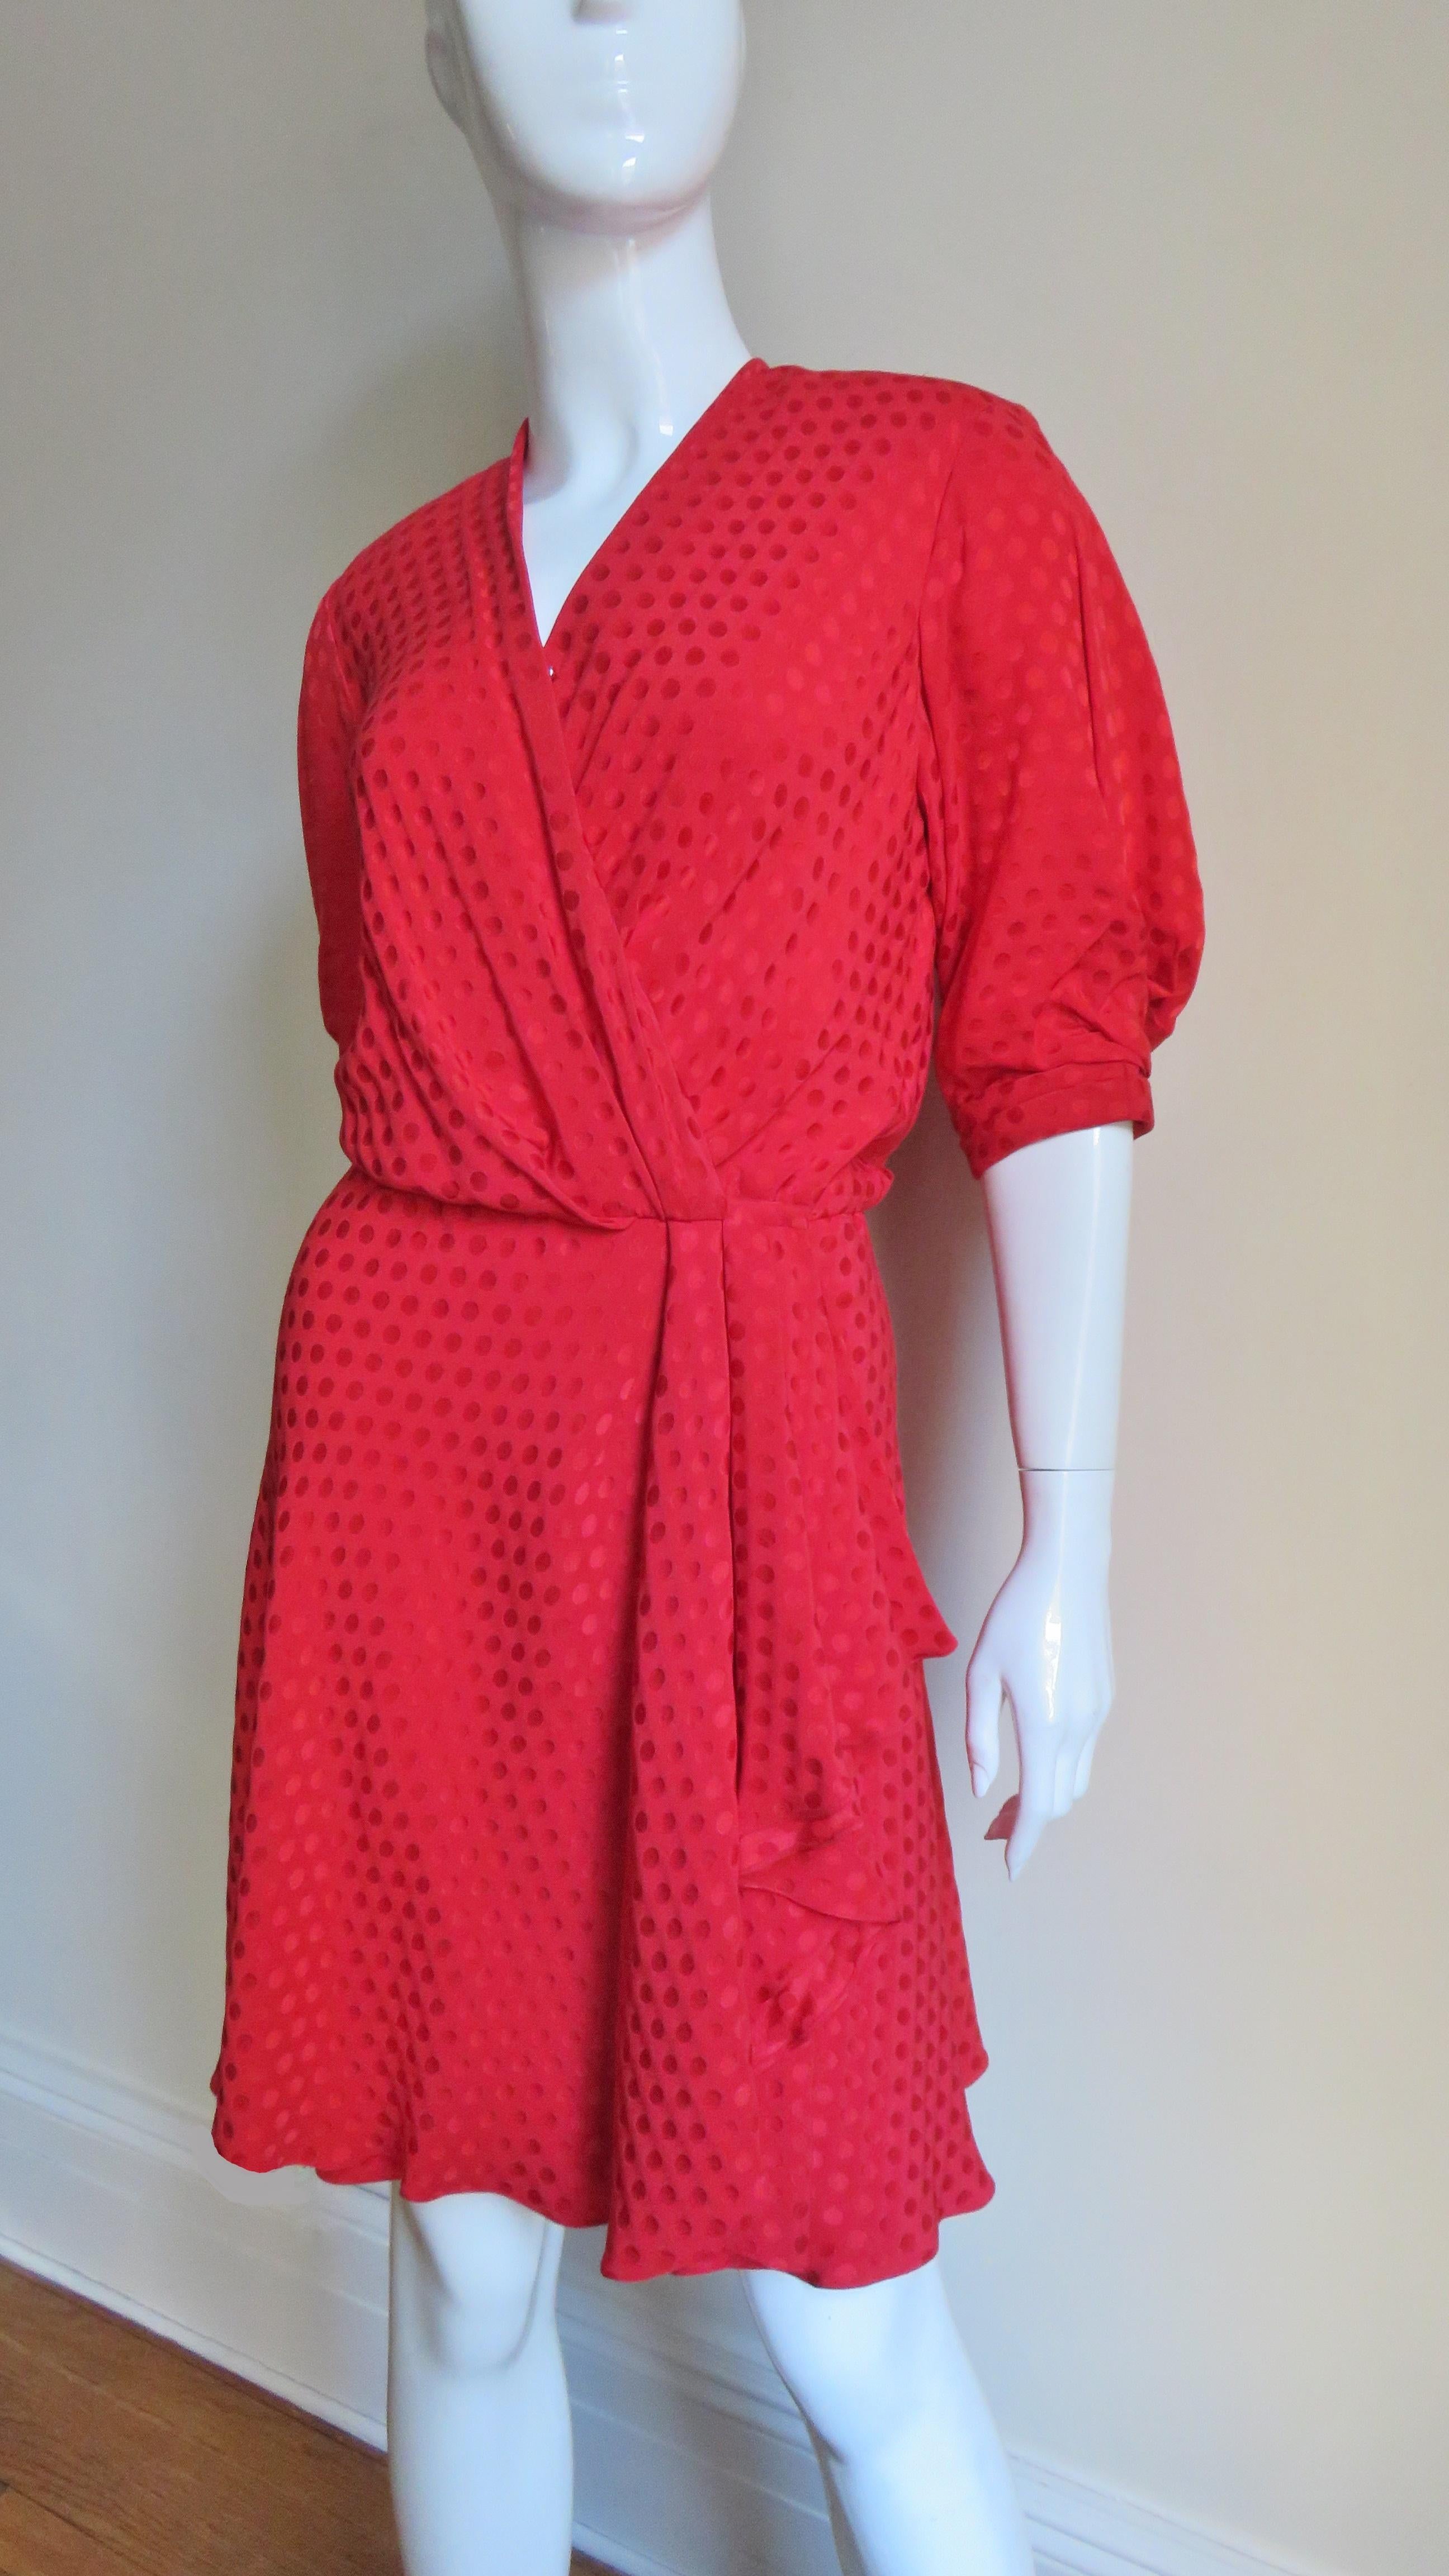 Ein wunderschönes Kleid aus Seidendamast mit roten Punkten von der französischen Designerin Jacqueline de Ribes.  Es wird vorne mit einem Haken in der Taille, passenden seidenbezogenen Druckknöpfen und einem kleinen Reißverschluss darunter